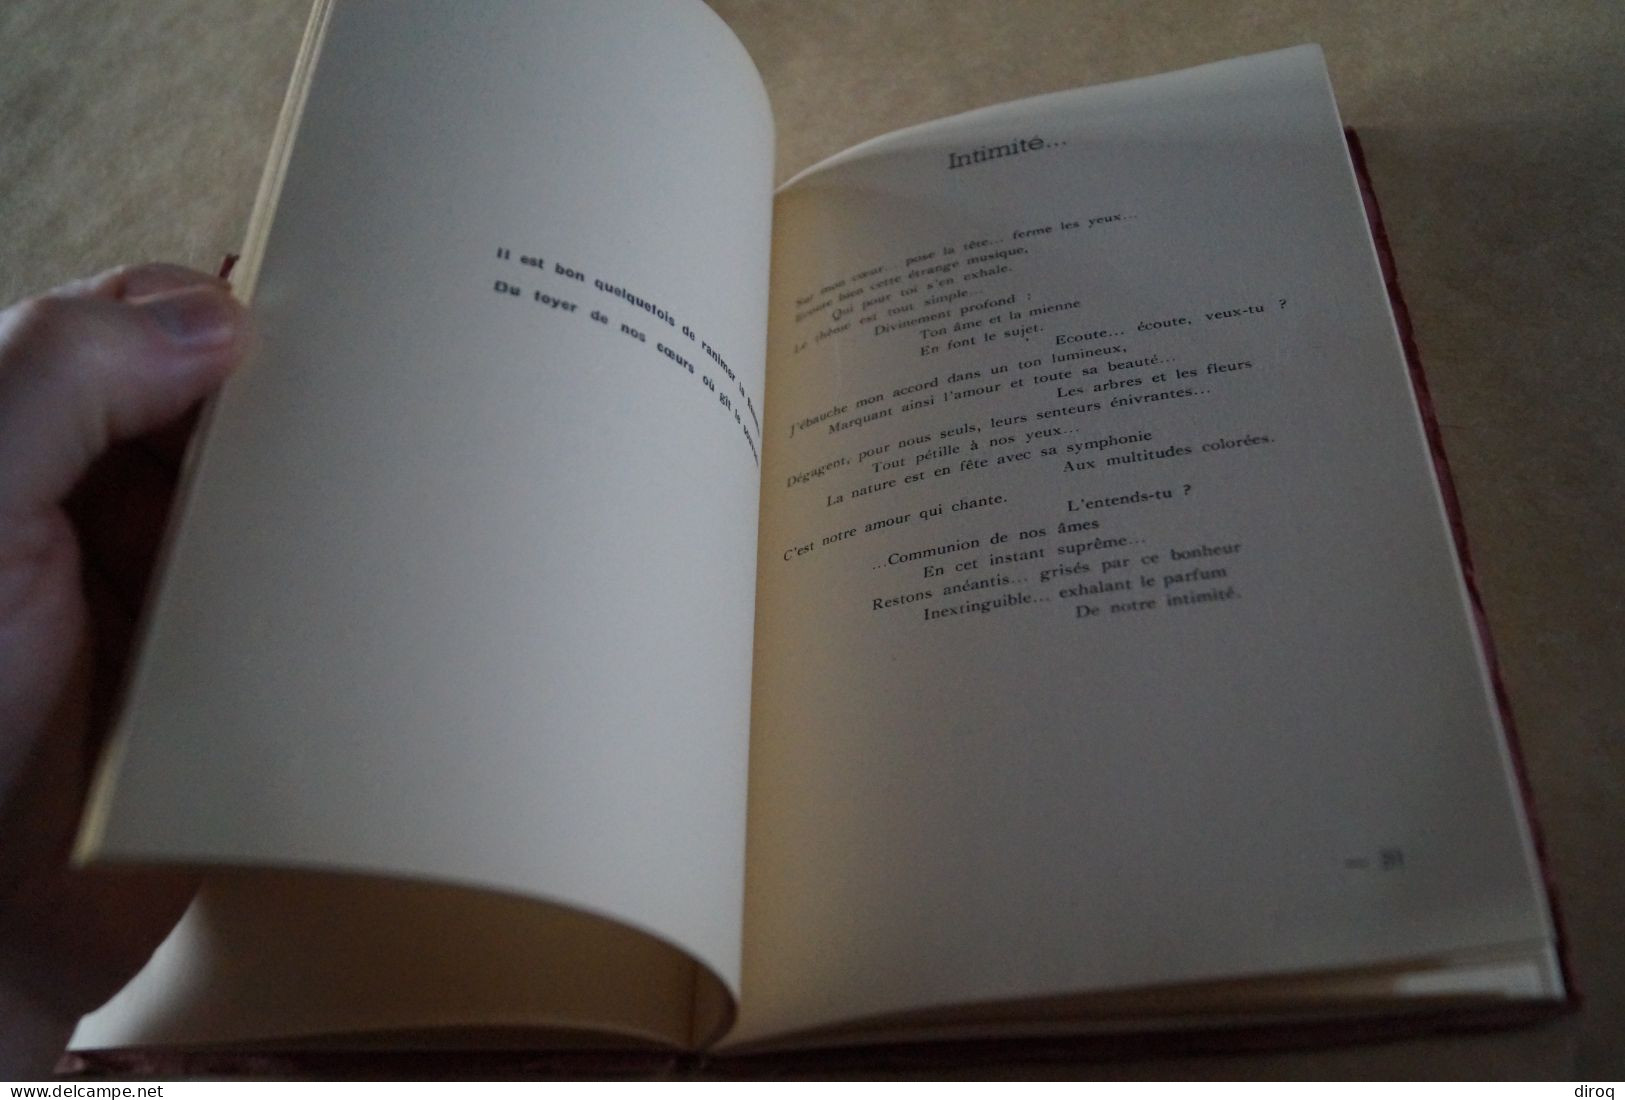 Georges Michaux,En Sourdine,poèmes 1946,dédicacé,51 pages,21,5 Cm. sur 14 Cm. très bel état